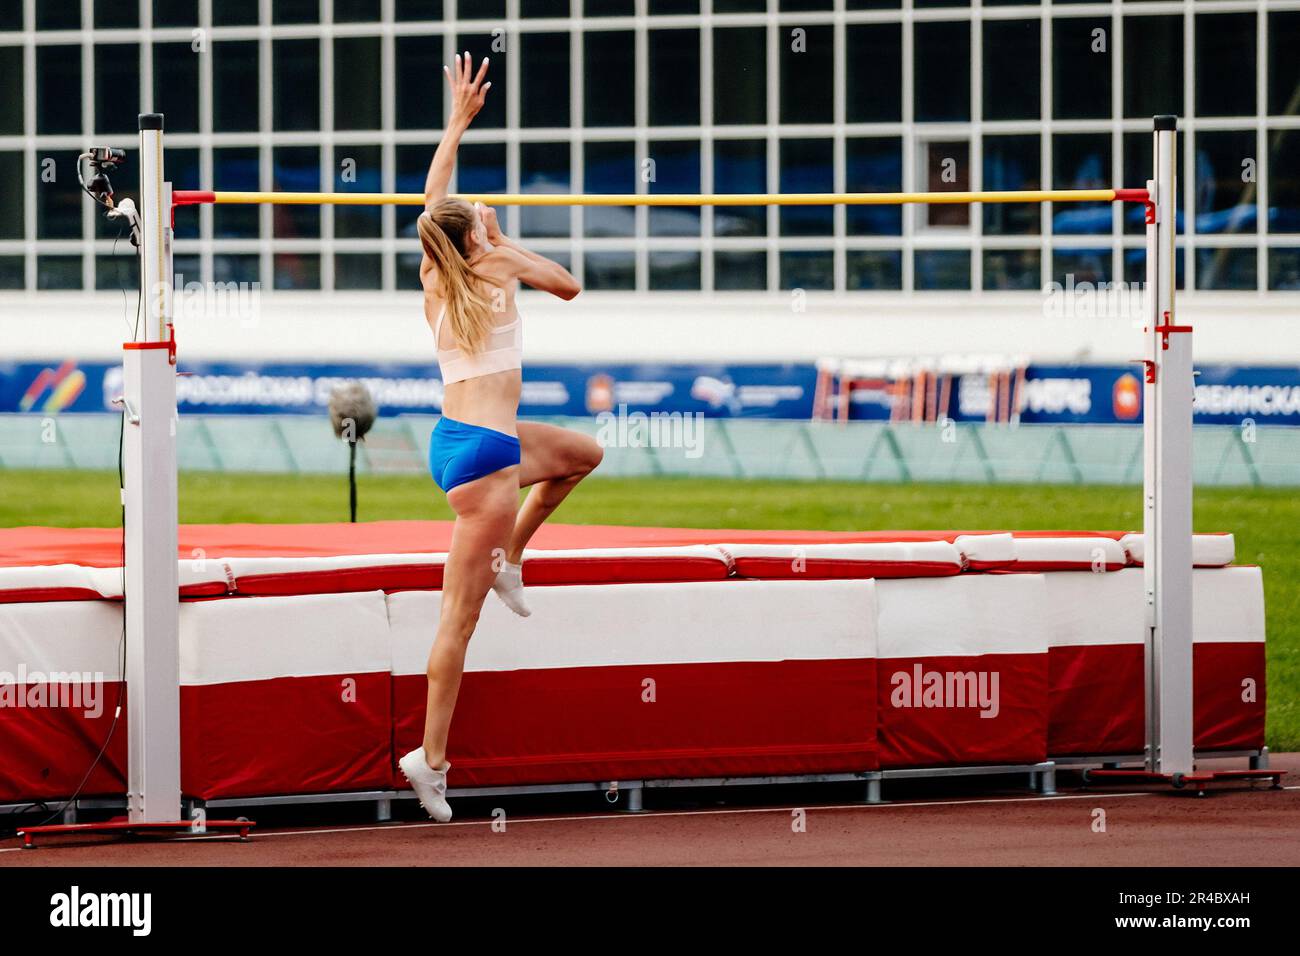 atleta donna che salta alto salto nei campionati estivi di atletica, fosbury flop technique Foto Stock